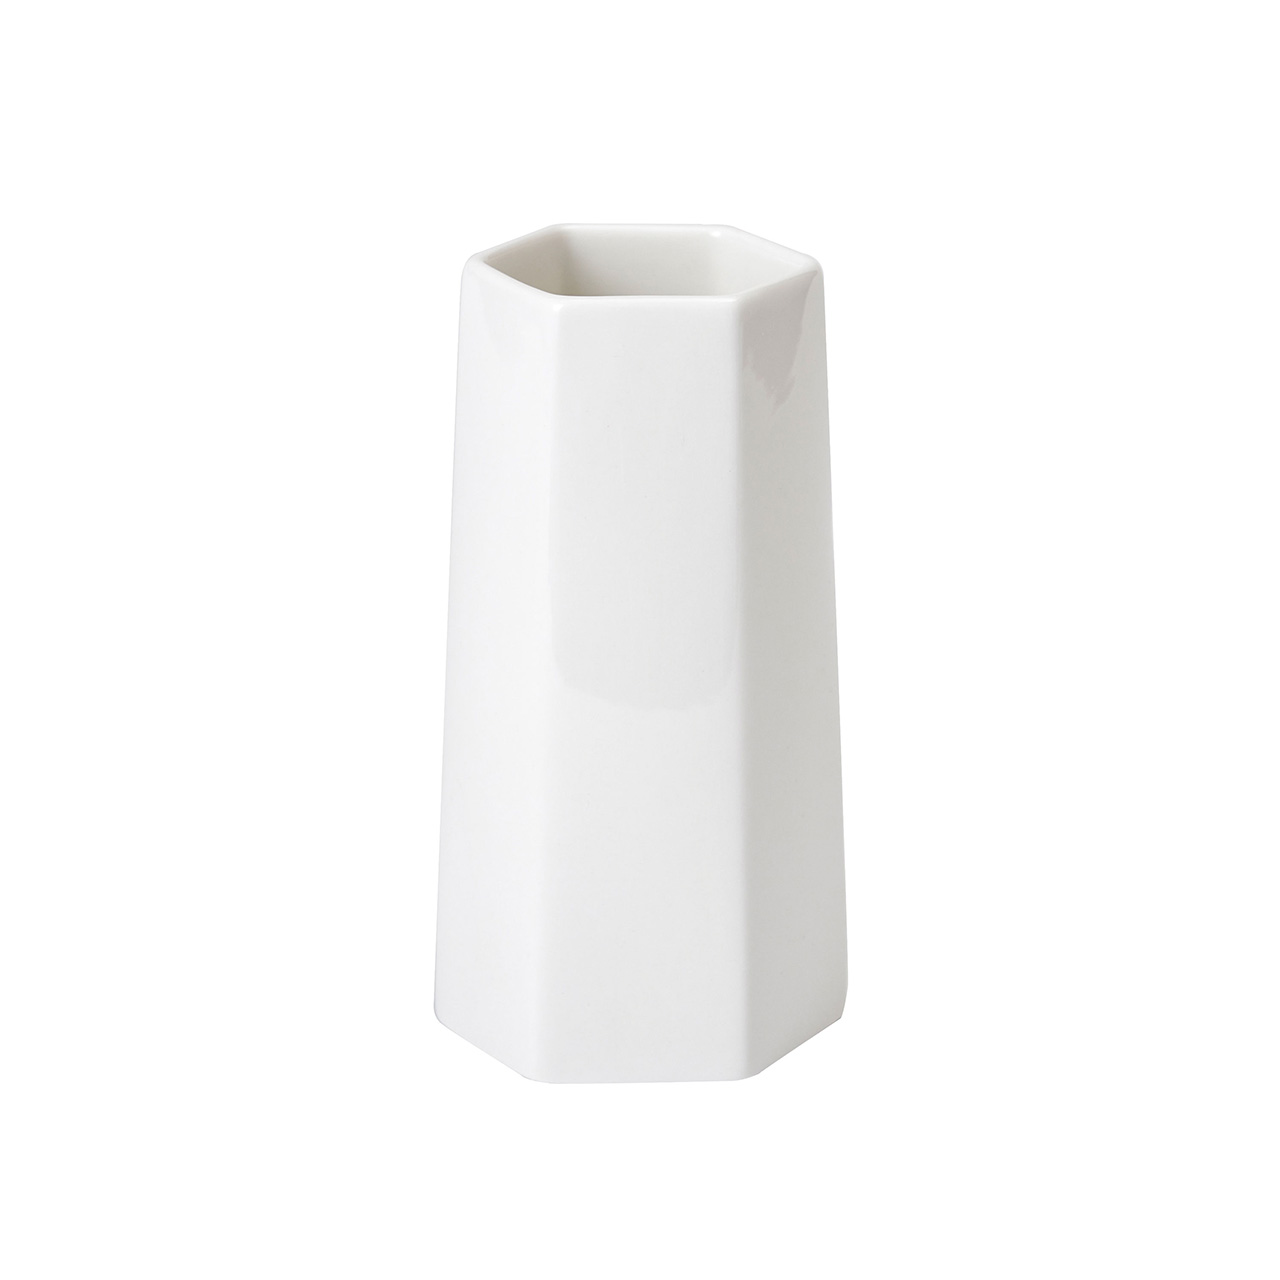 マイフラ】 通販/クレイ The VASE type D ホワイト 花器 花瓶 陶器 CC366431-100(長さ 約8×幅 約7.5×高さ  約16cm ホワイト): 花器・花瓶・フレーム・天然素材ベース/全国にMAGIQ、花器、花資材などをお届けします。